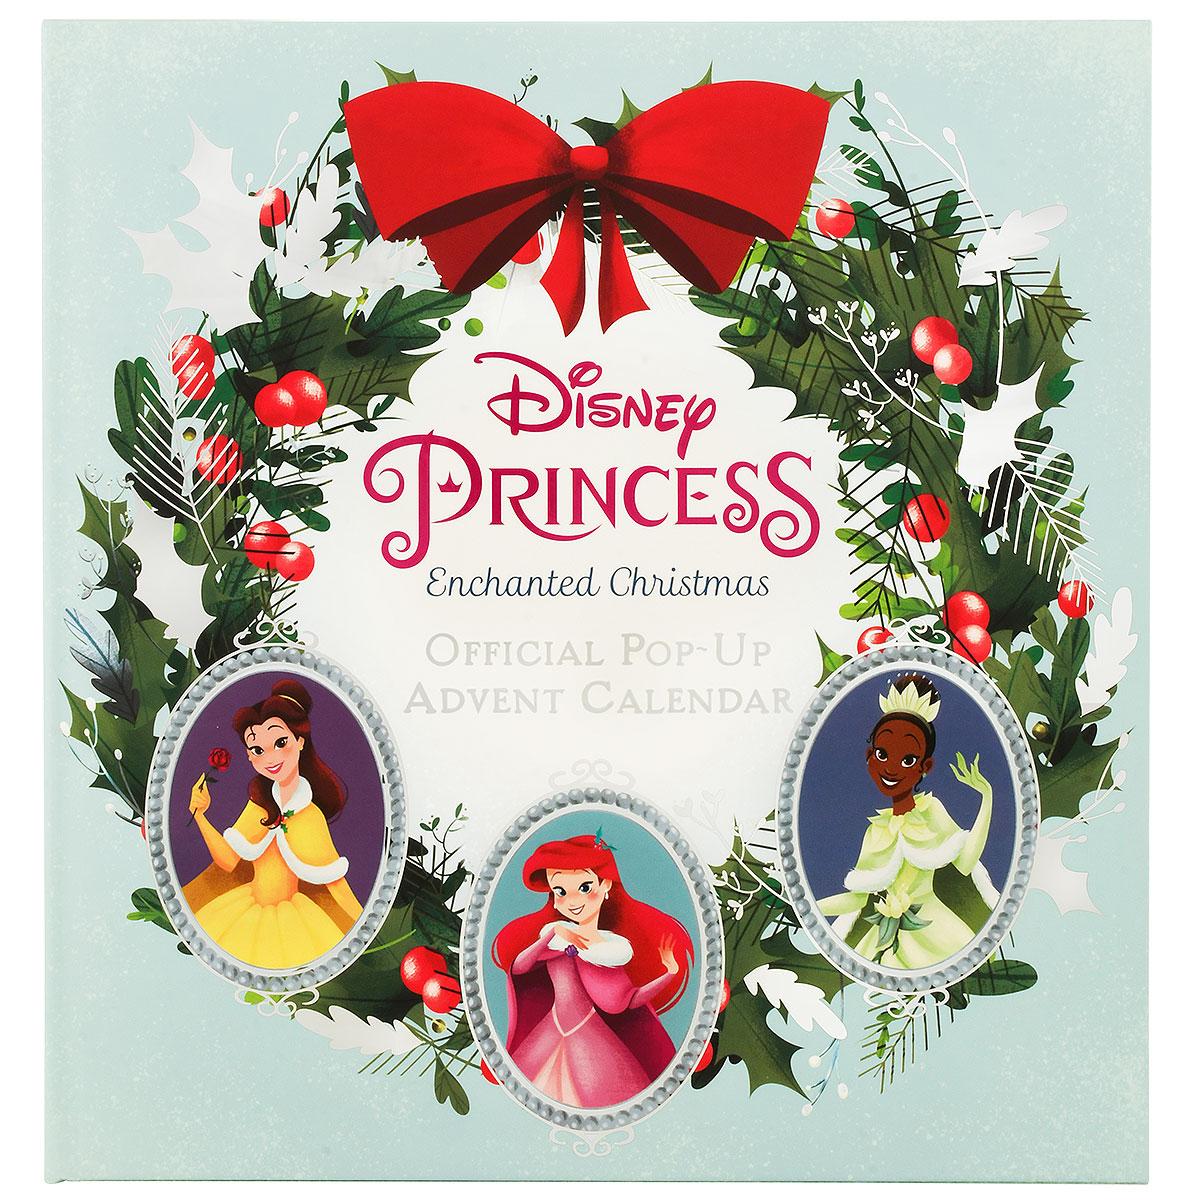 Disney Princess Pop-Up Advent Calendar